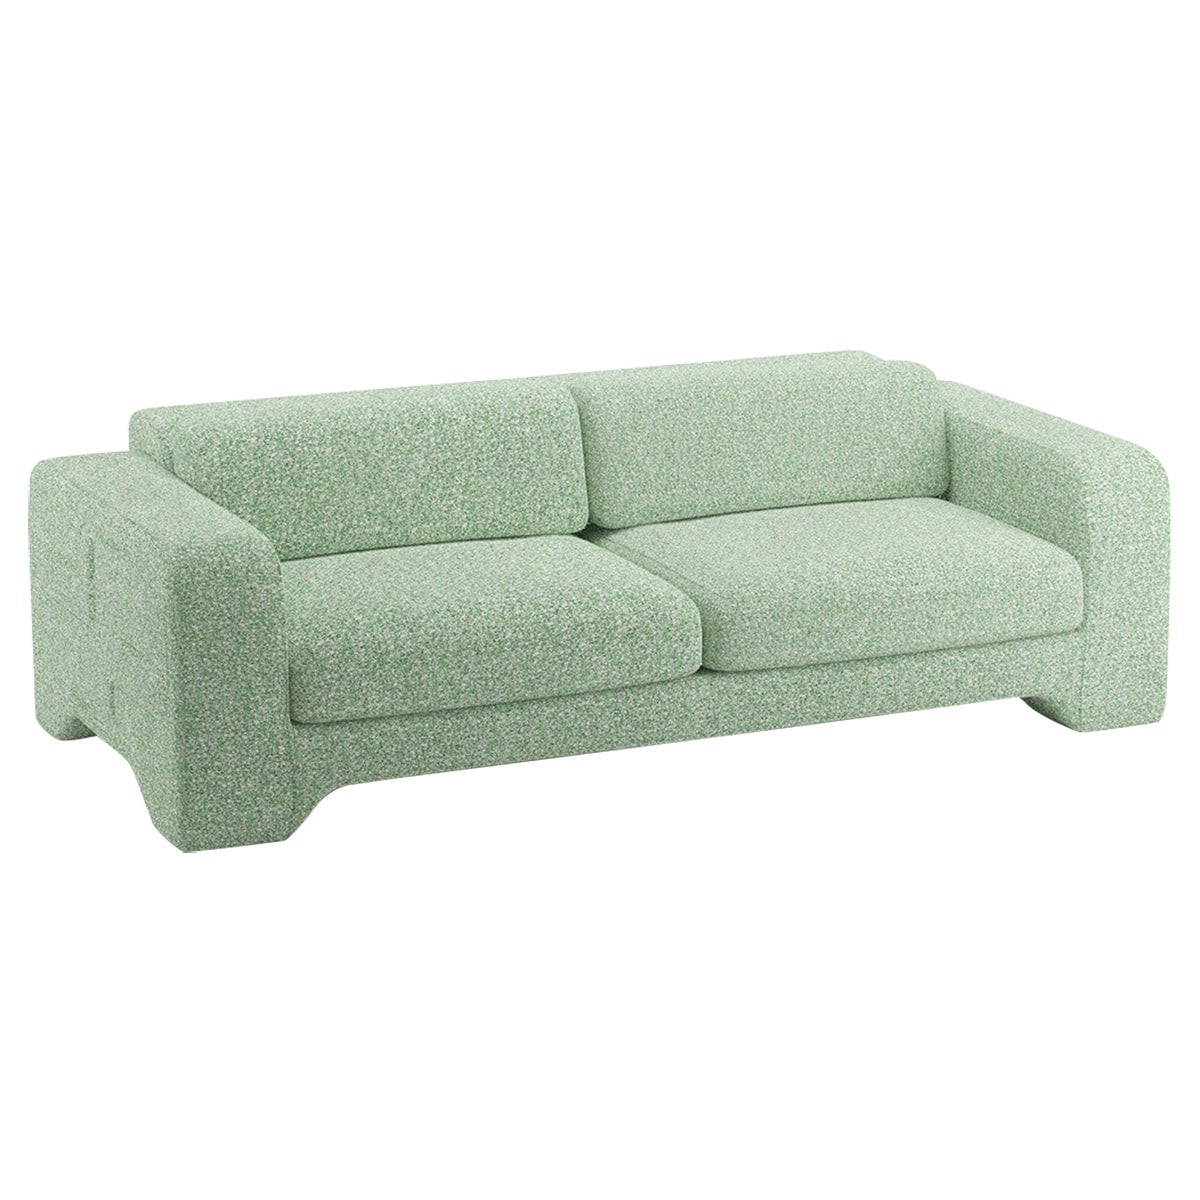 Popus Editions Giovanna 2.5 Seater Sofa in Grass Zanzi Linen Fabric